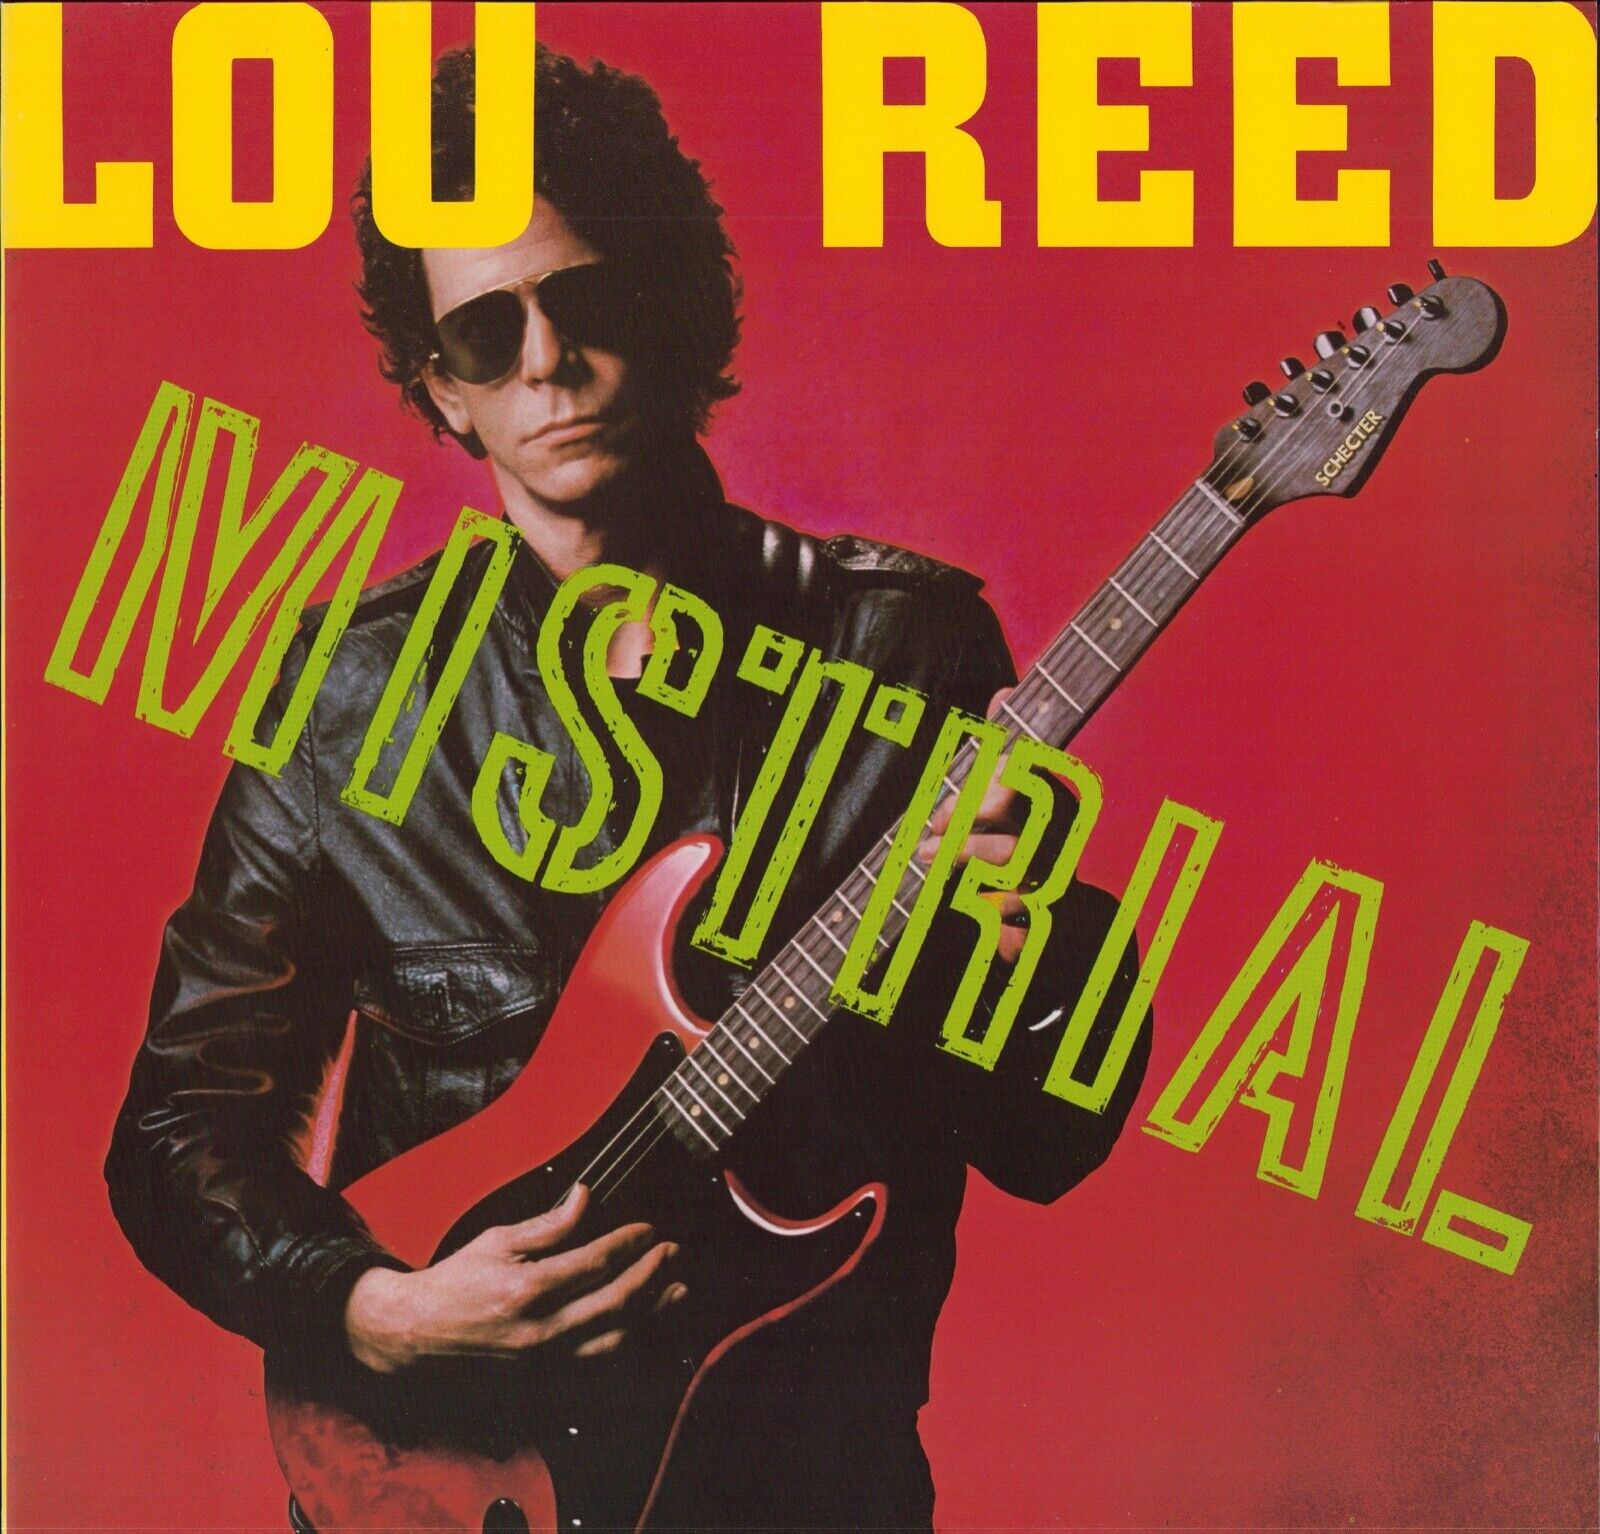 Lou Reed - Mistrial Vinyl LP